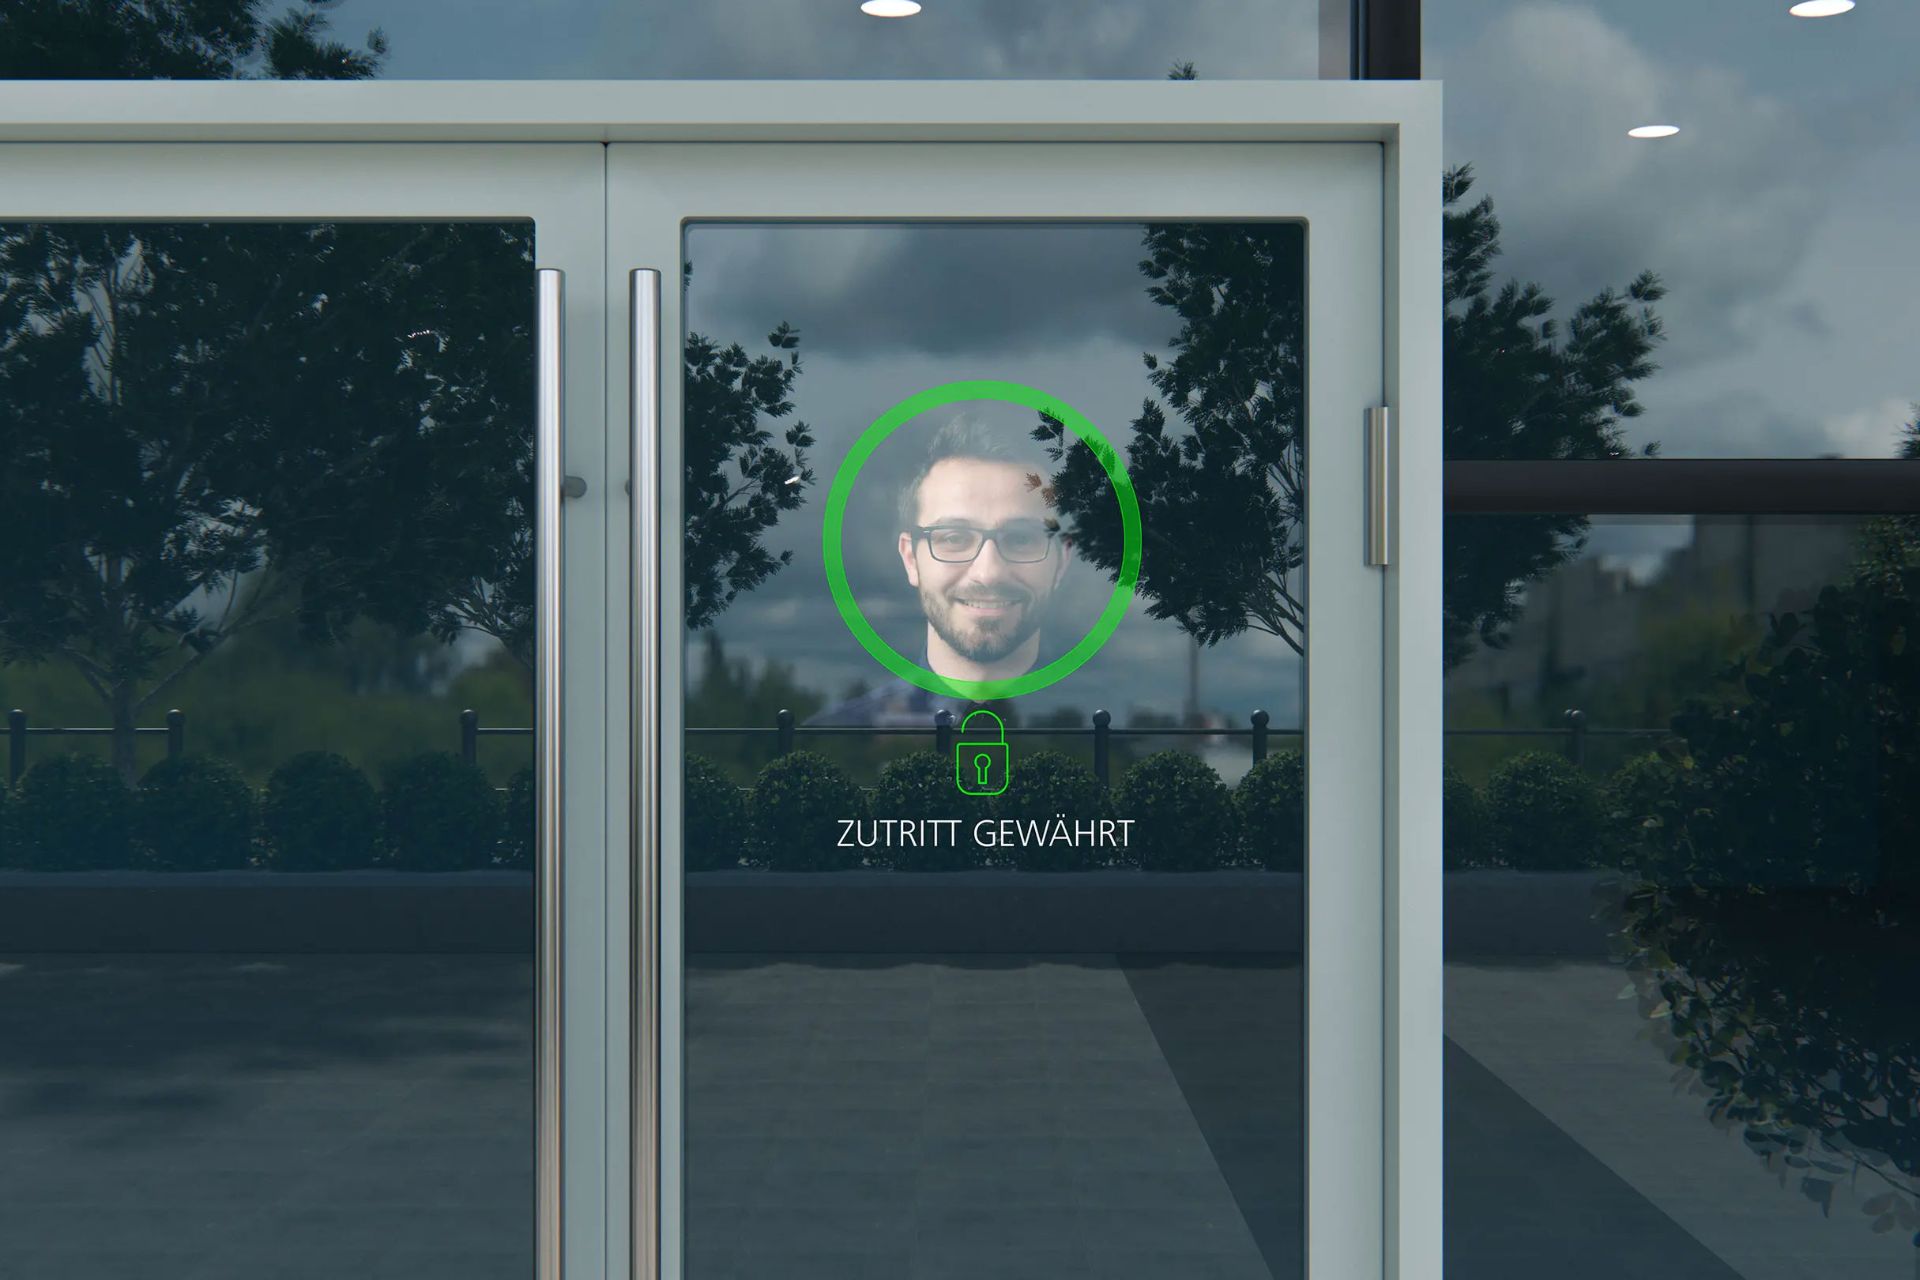 نمایش اطلاعات خانه با دوربین شفاف زایس با تصویر مرد روی پنجره